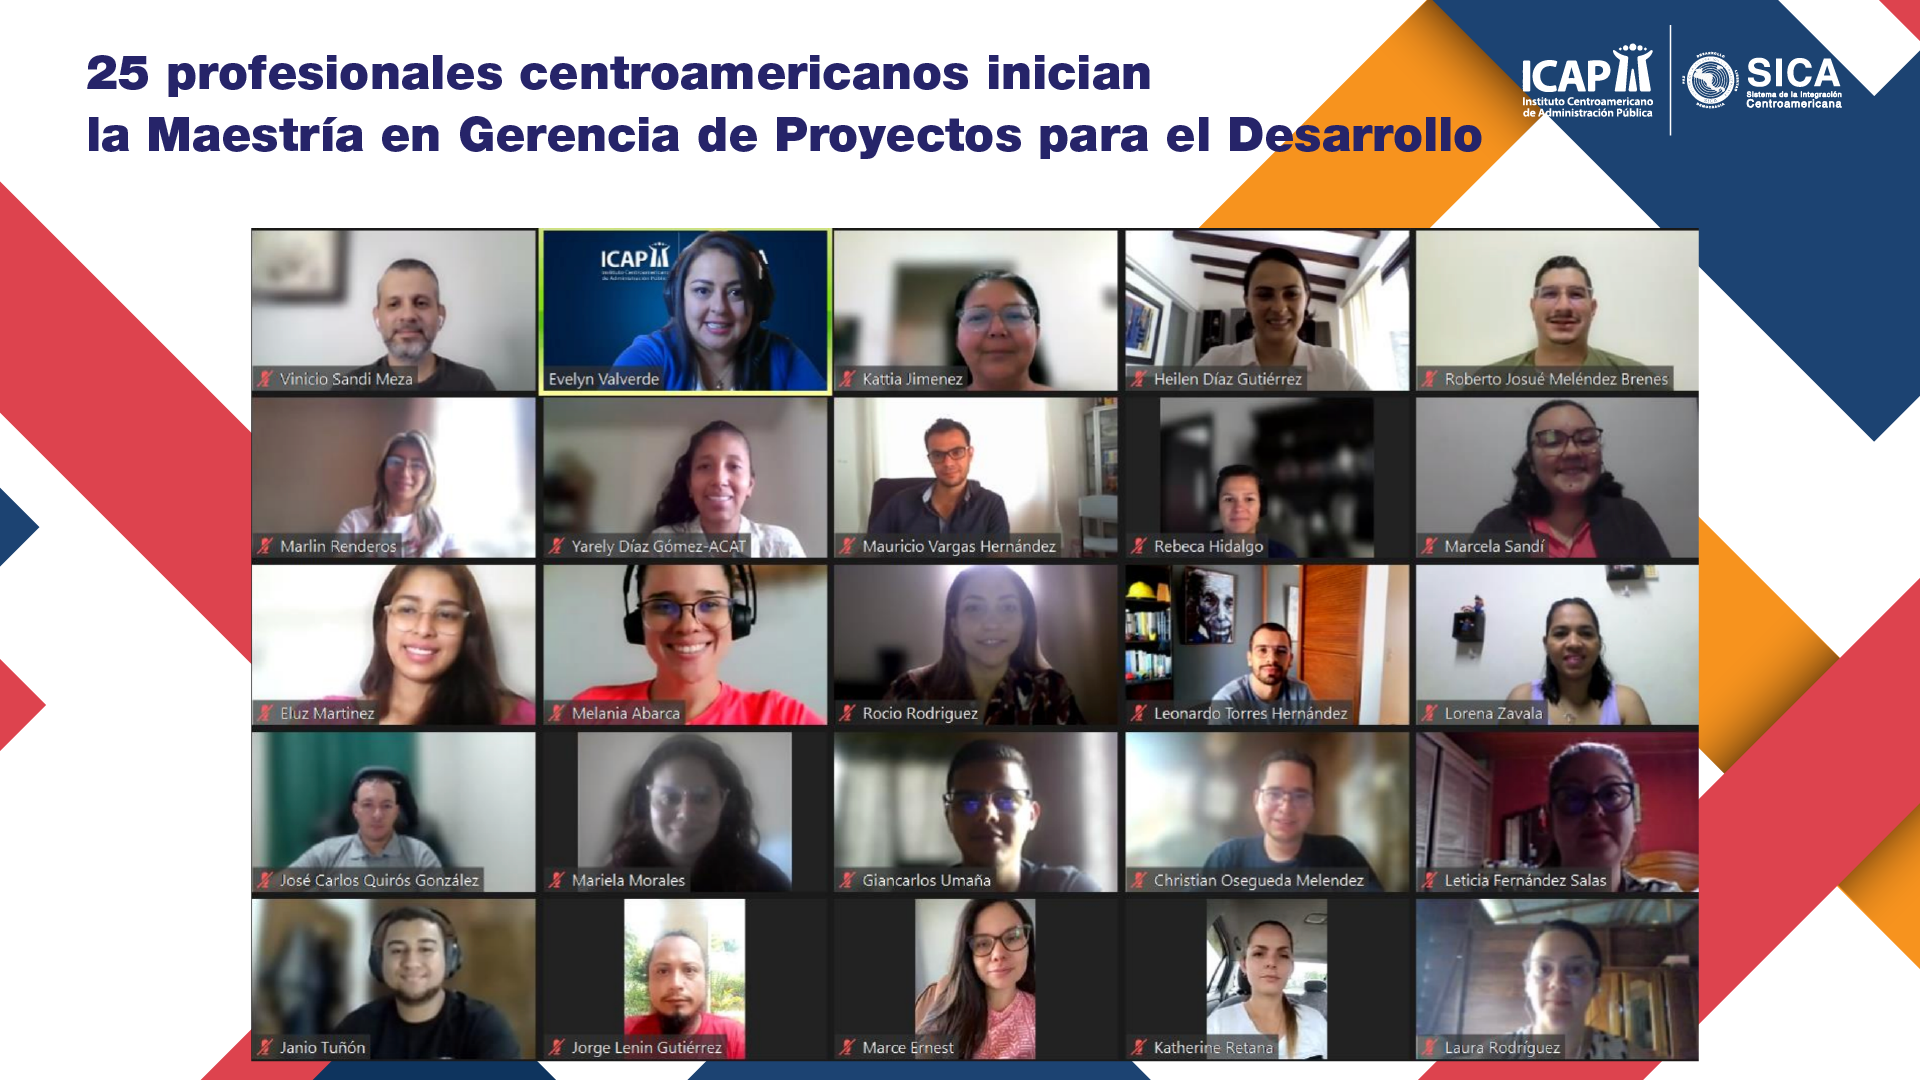 25 centroamericanos inician formación en la Maestría en Gerencia de Proyectos para el Desarrollo